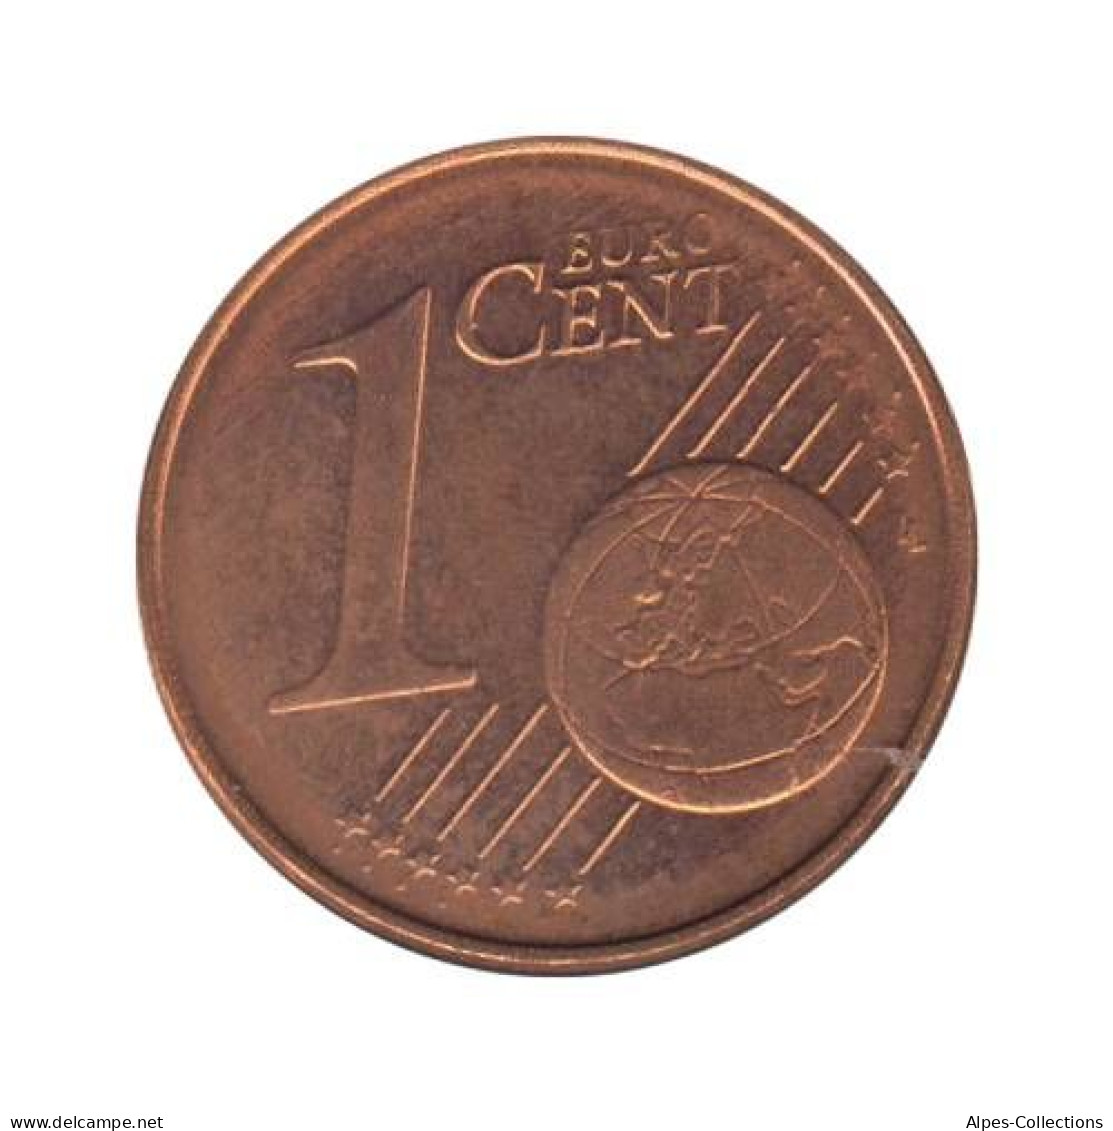 AL00102.1A - ALLEMAGNE - 1 Cent D'euro - 2002 A - Germania